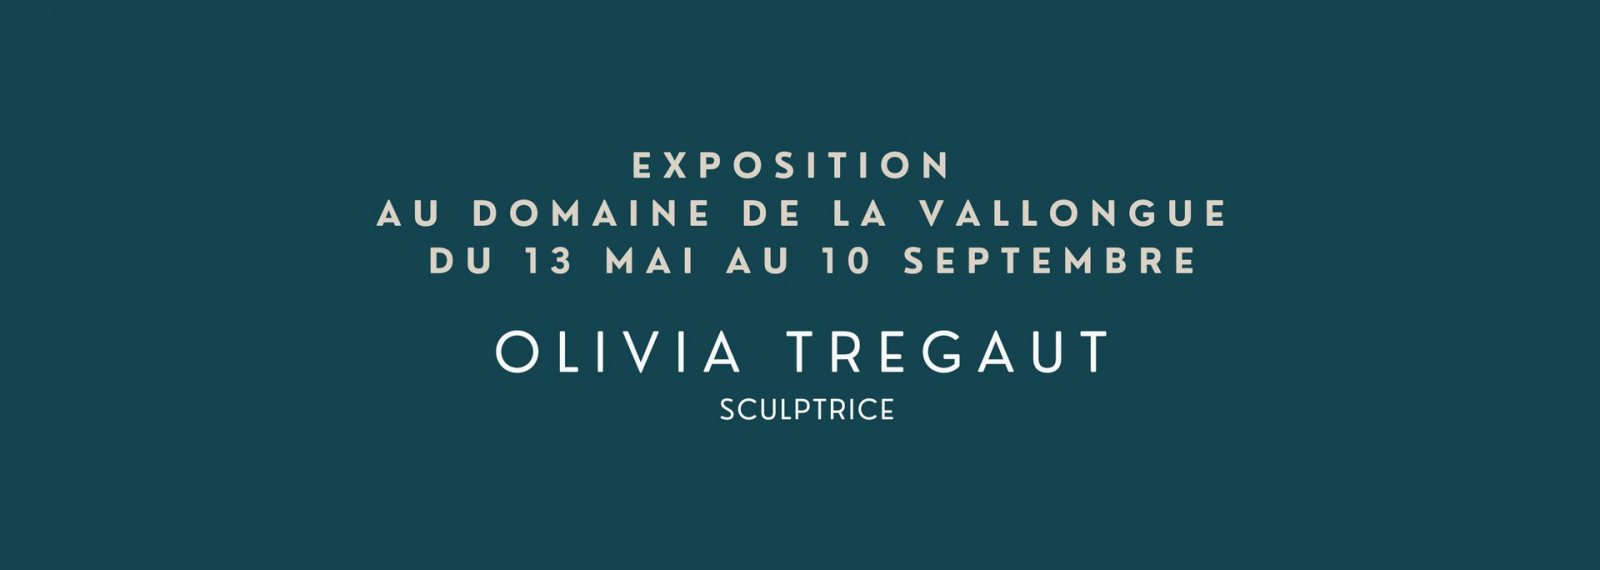 Exposition d'Olivia Tregaut au Domaine de la Vallongue à Saint-Rémy-de-Provence